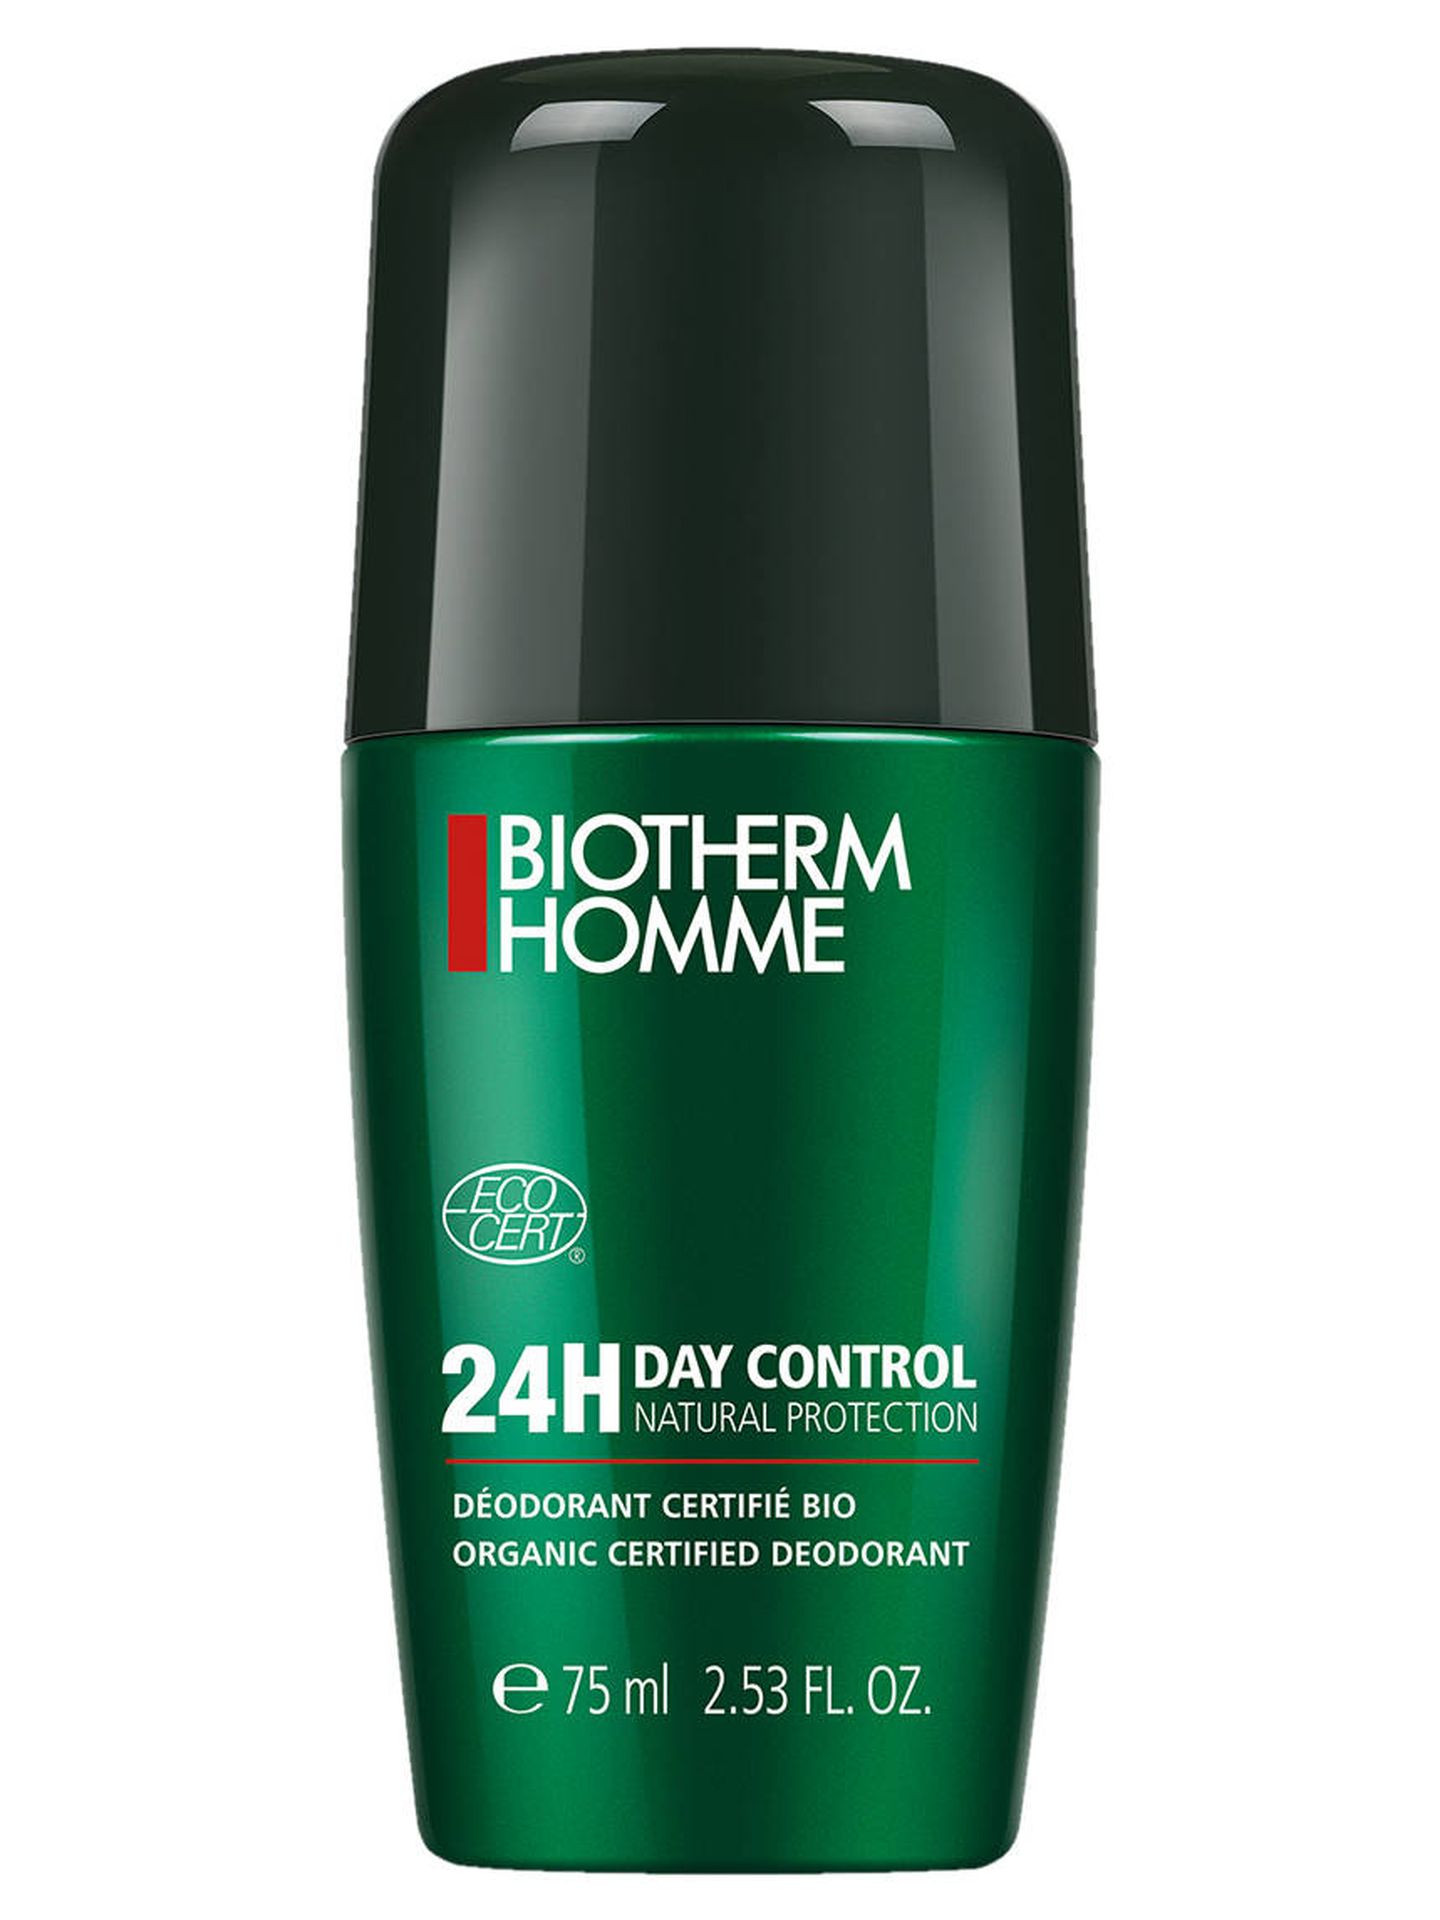 Desodorante 24h Day Control de Biotherm Homme